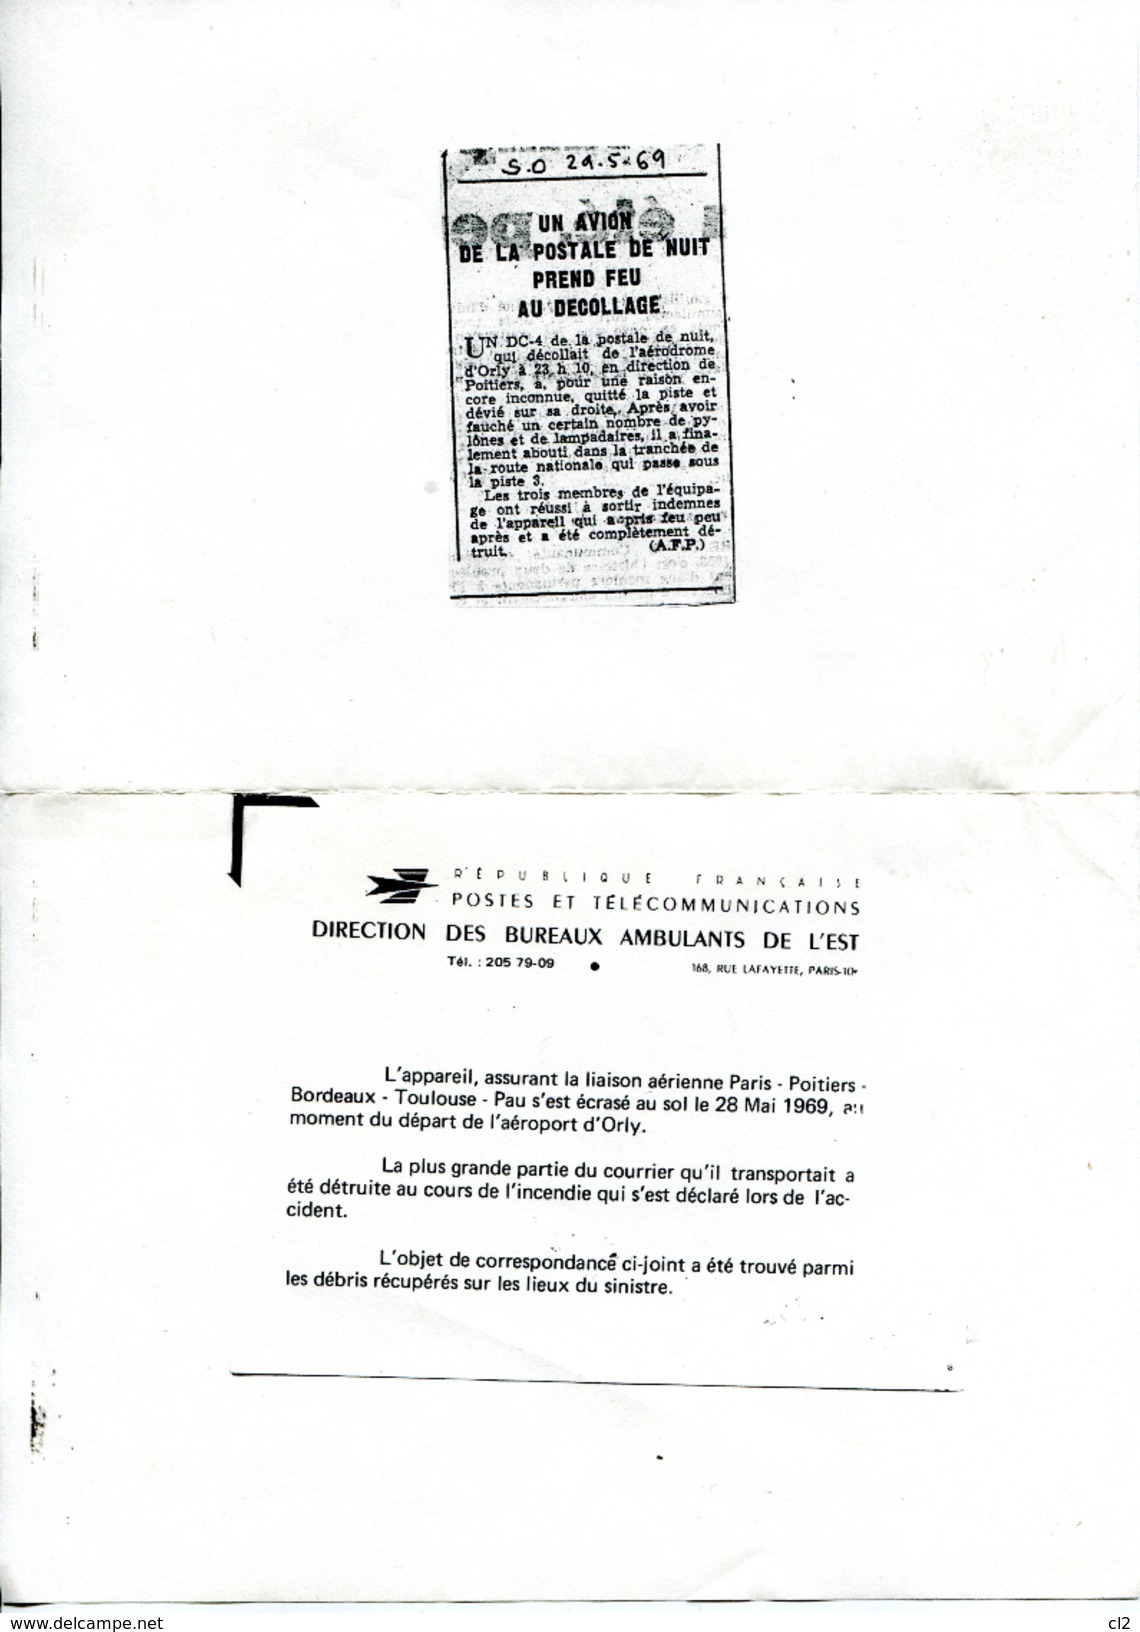 # - 28 Mai 1969 - ORLY - Accident D'un DC4 De La Postale - Courrier Ré-acheminé Par La Poste - Unfallpost